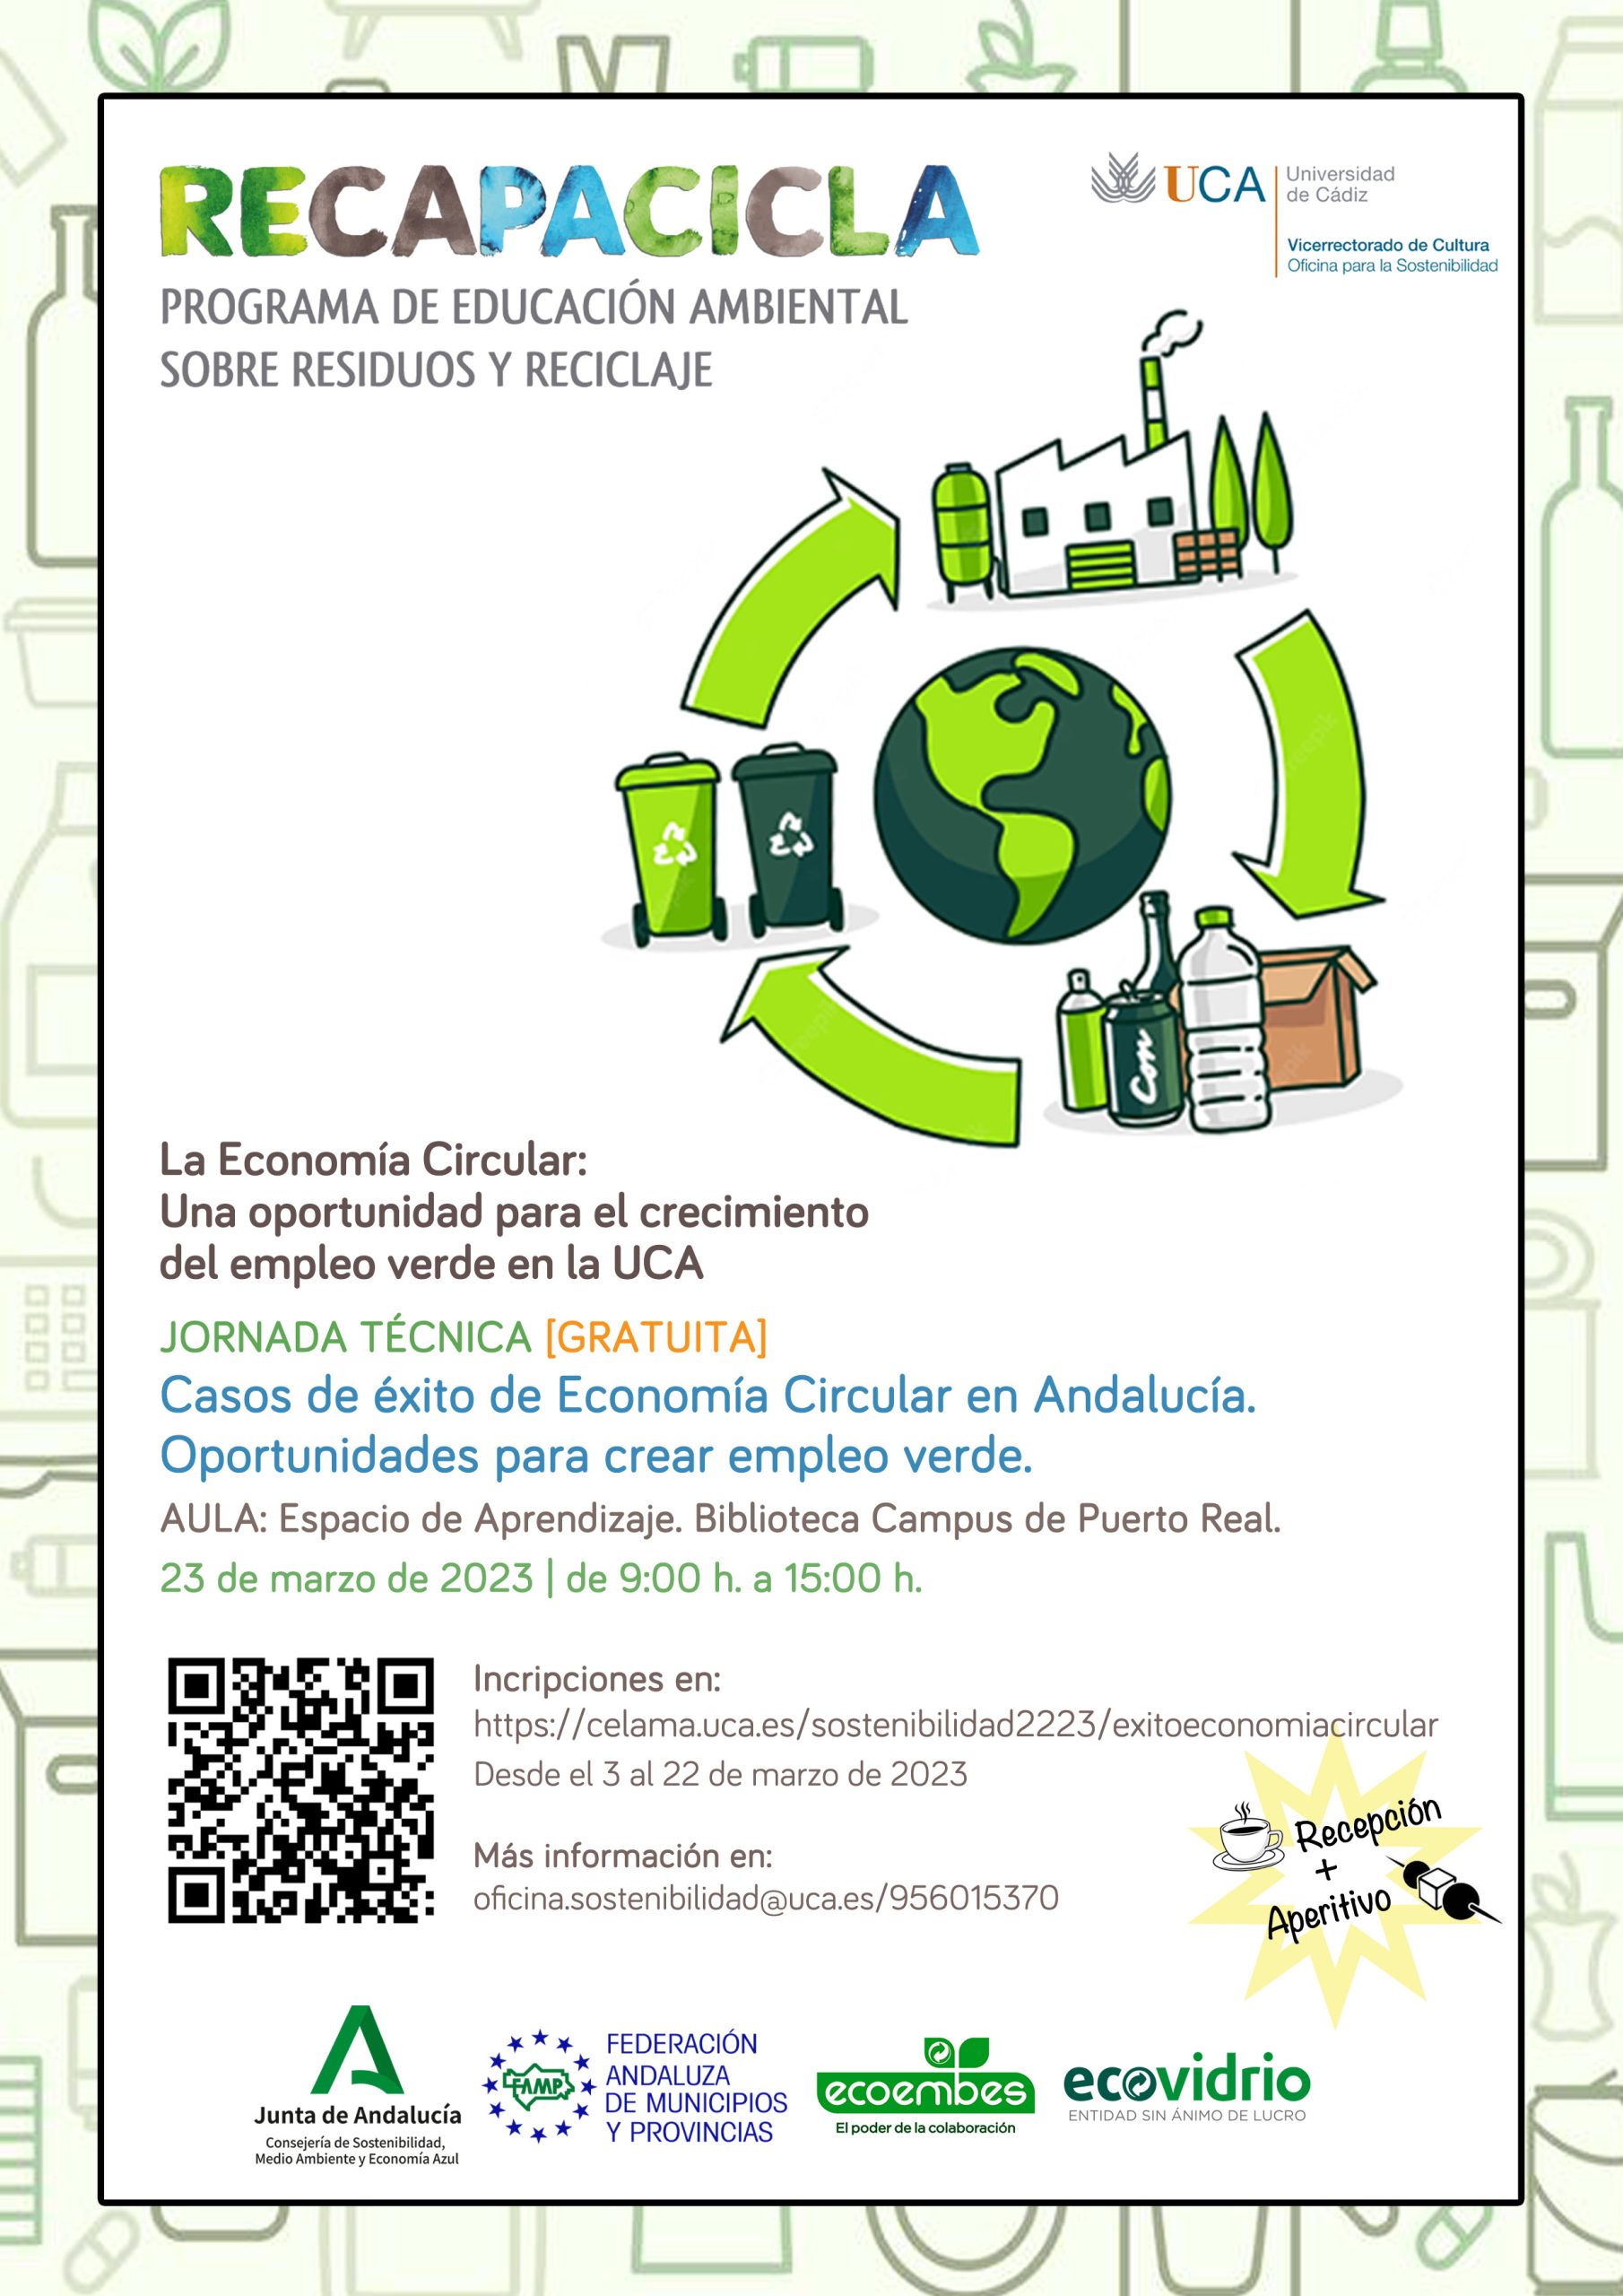 Abierto el plazo de inscripción para la Jornada Técnica “Casos de éxito de Economía Circular en Andalucía. Oportunidades para crear empleo verde”